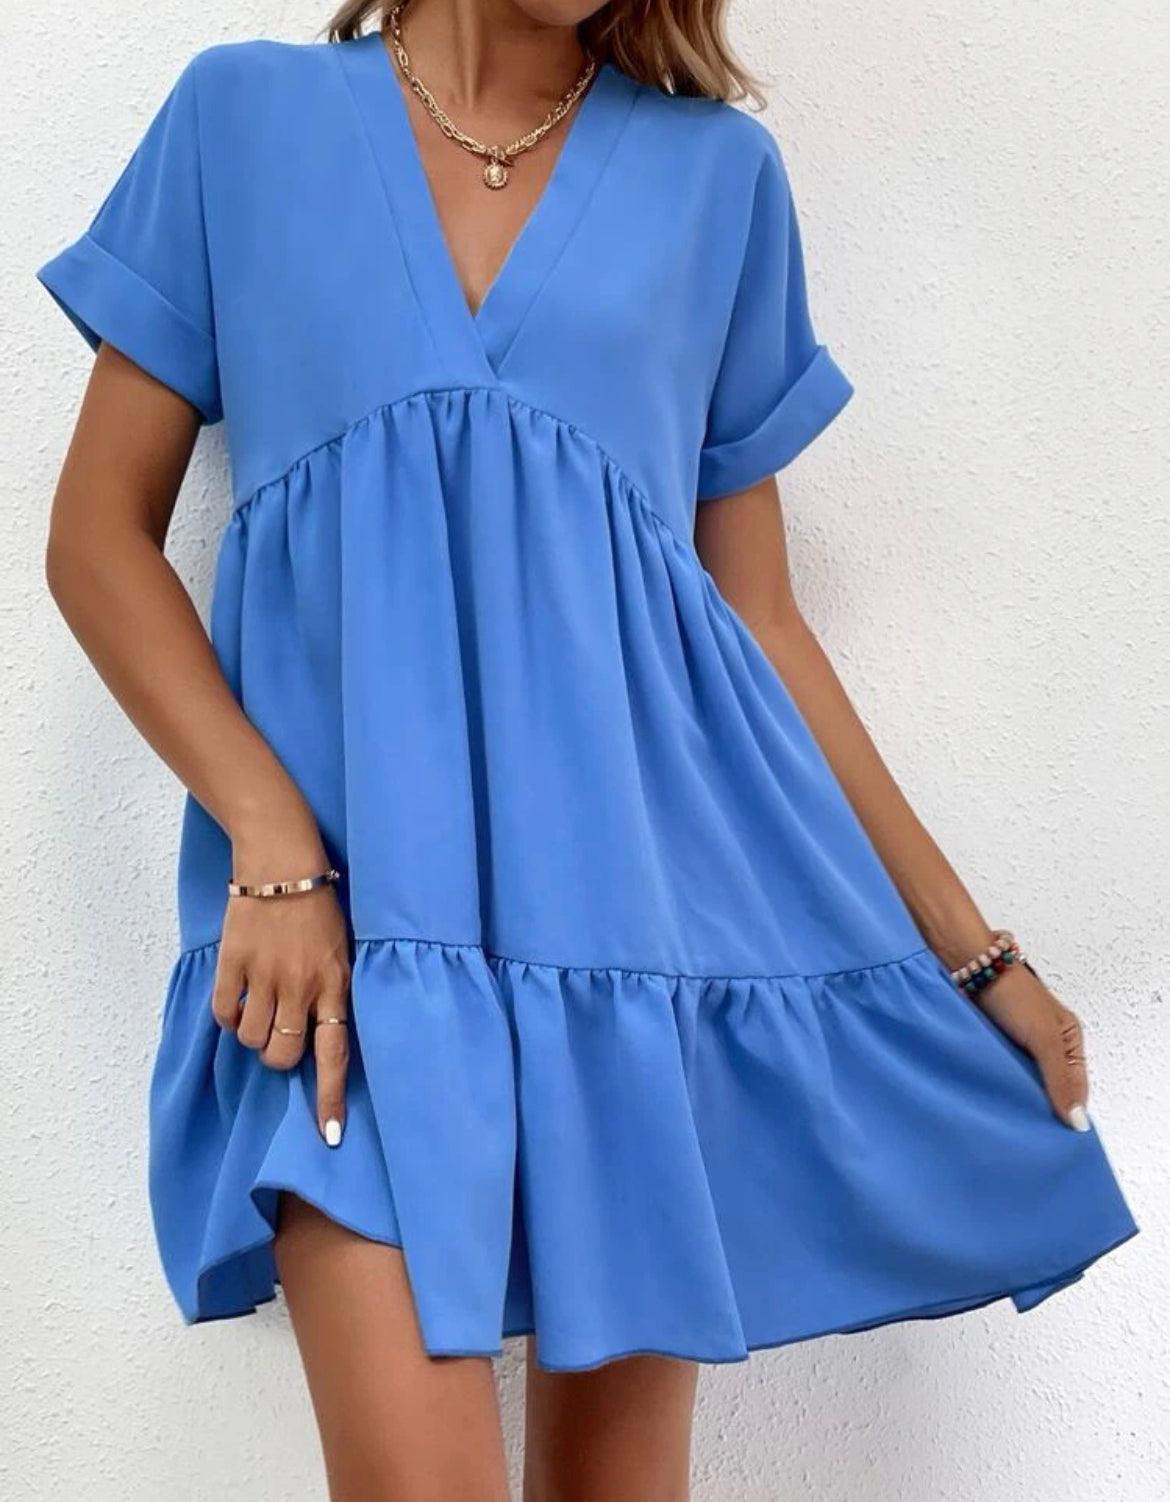 Blue Summer Dress V- Neck